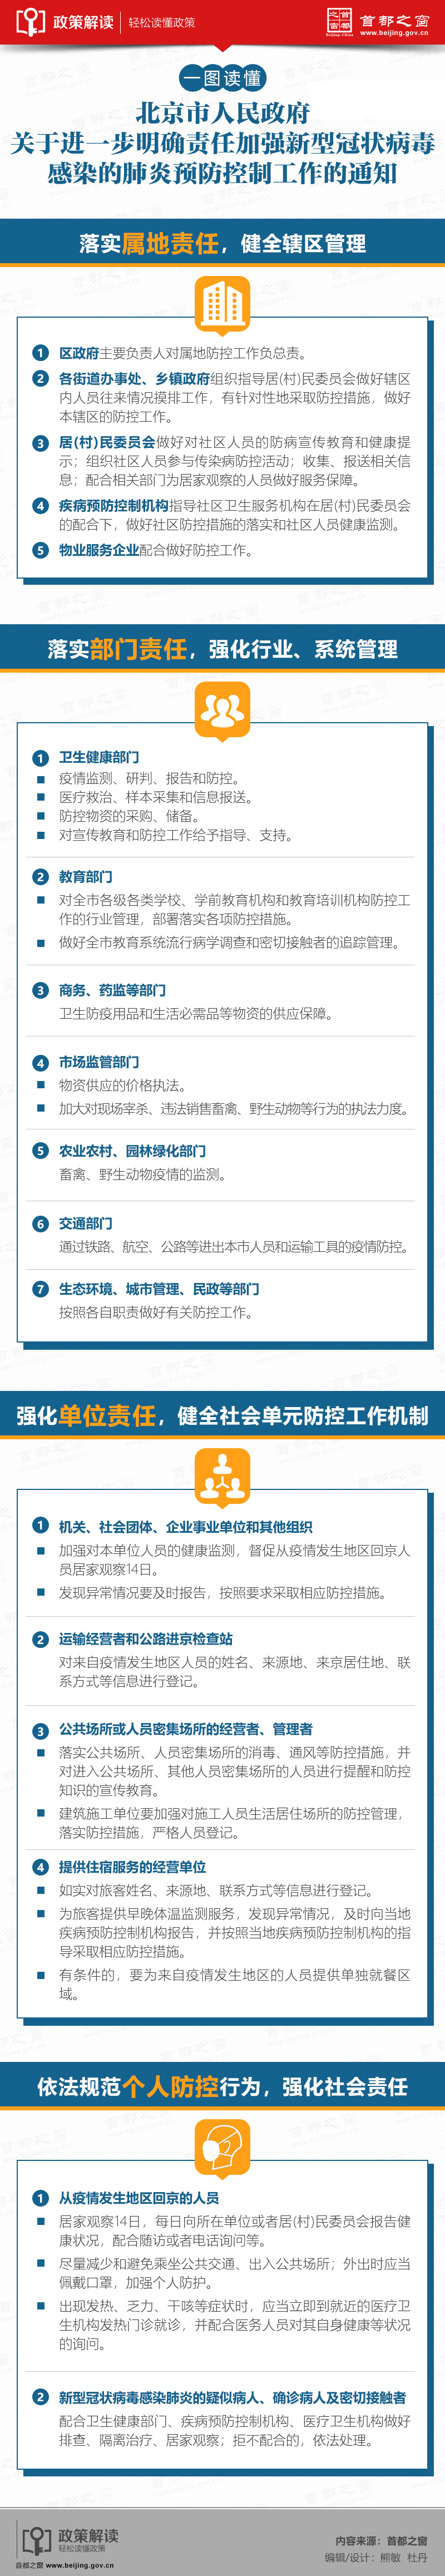 一图读懂  北京市人民政府关于进一步明确责任加强新型冠状病毒感染的肺炎.jpg